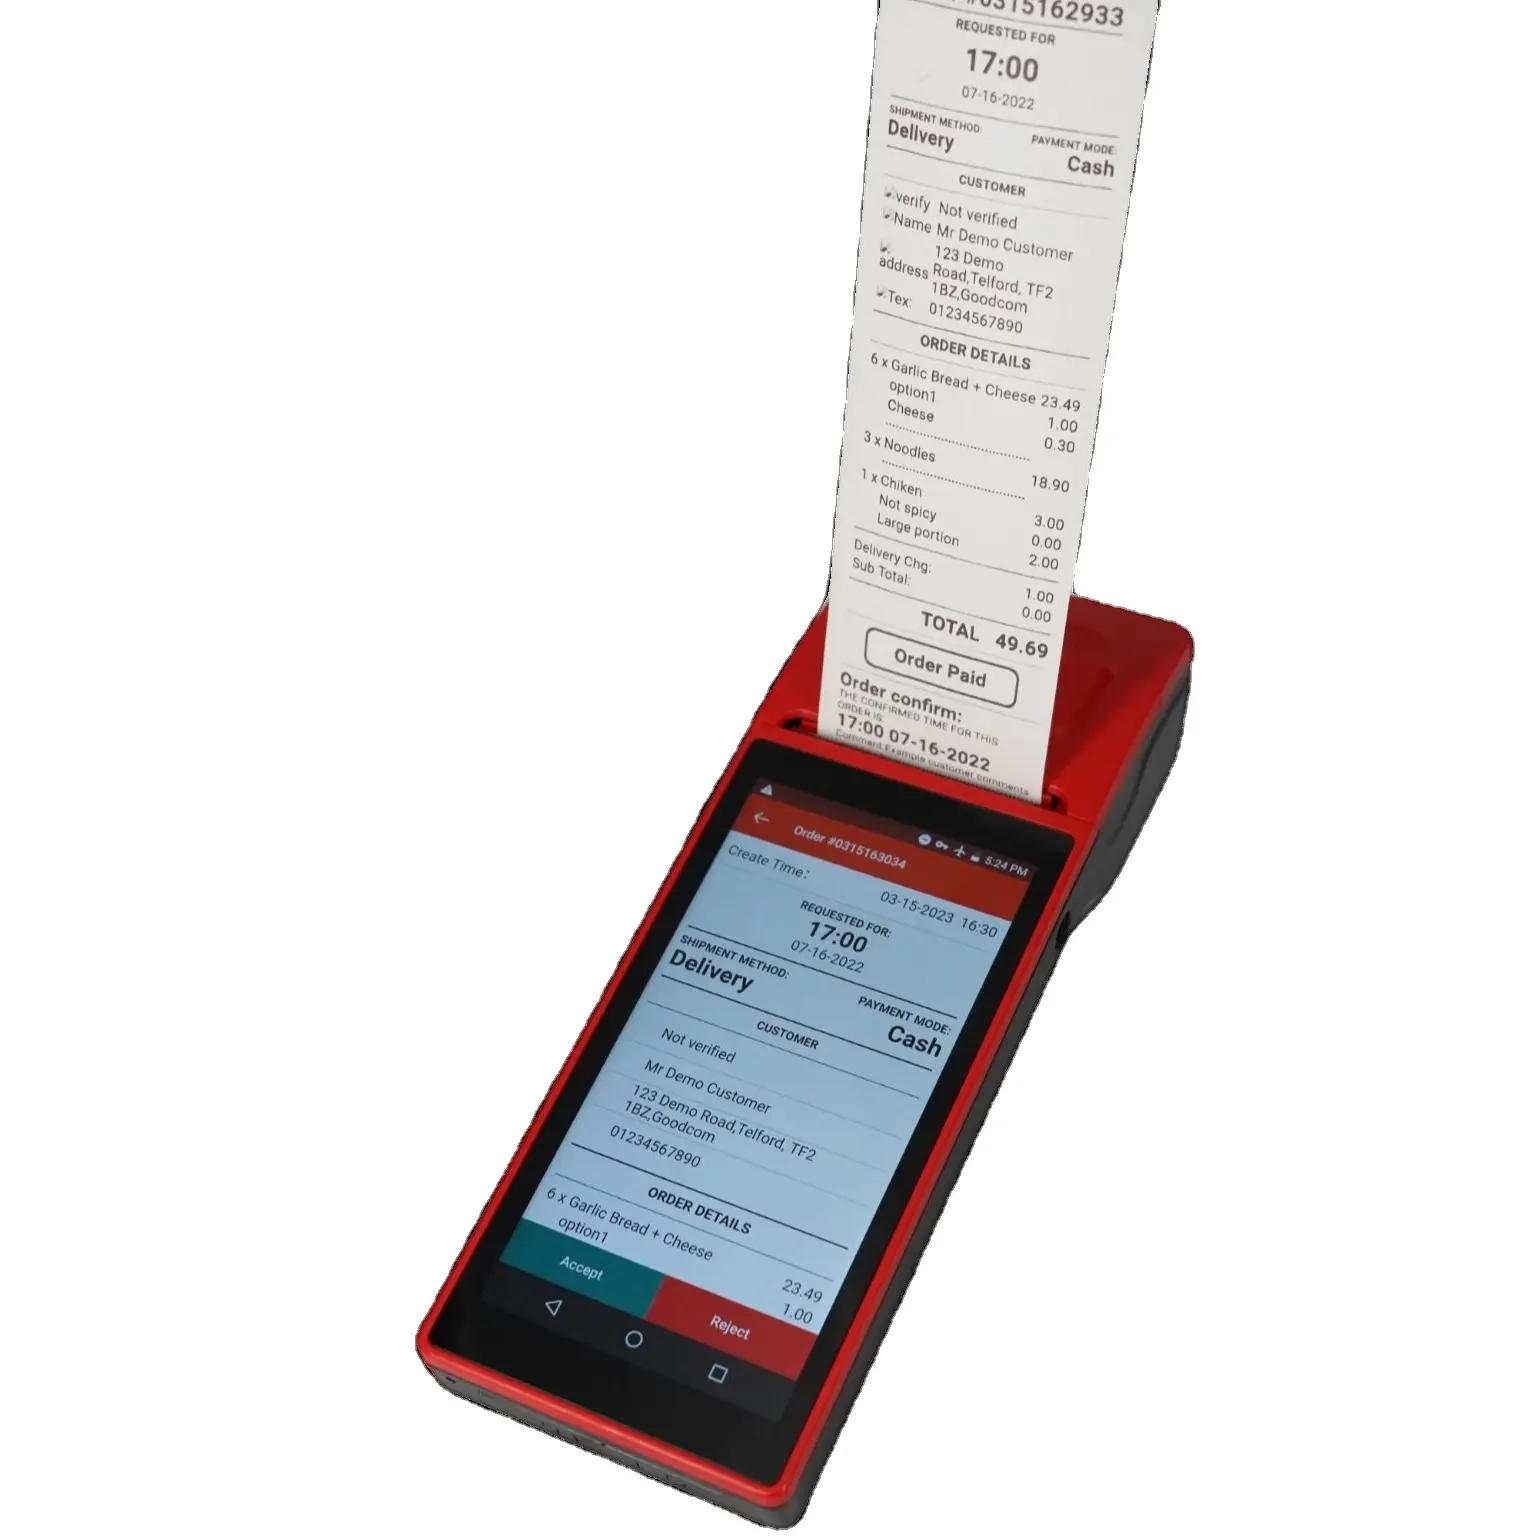 Портативная машина PosTerminal с 58 мм термочеком SMS GPRS принтер для онлайн-заказа продуктов